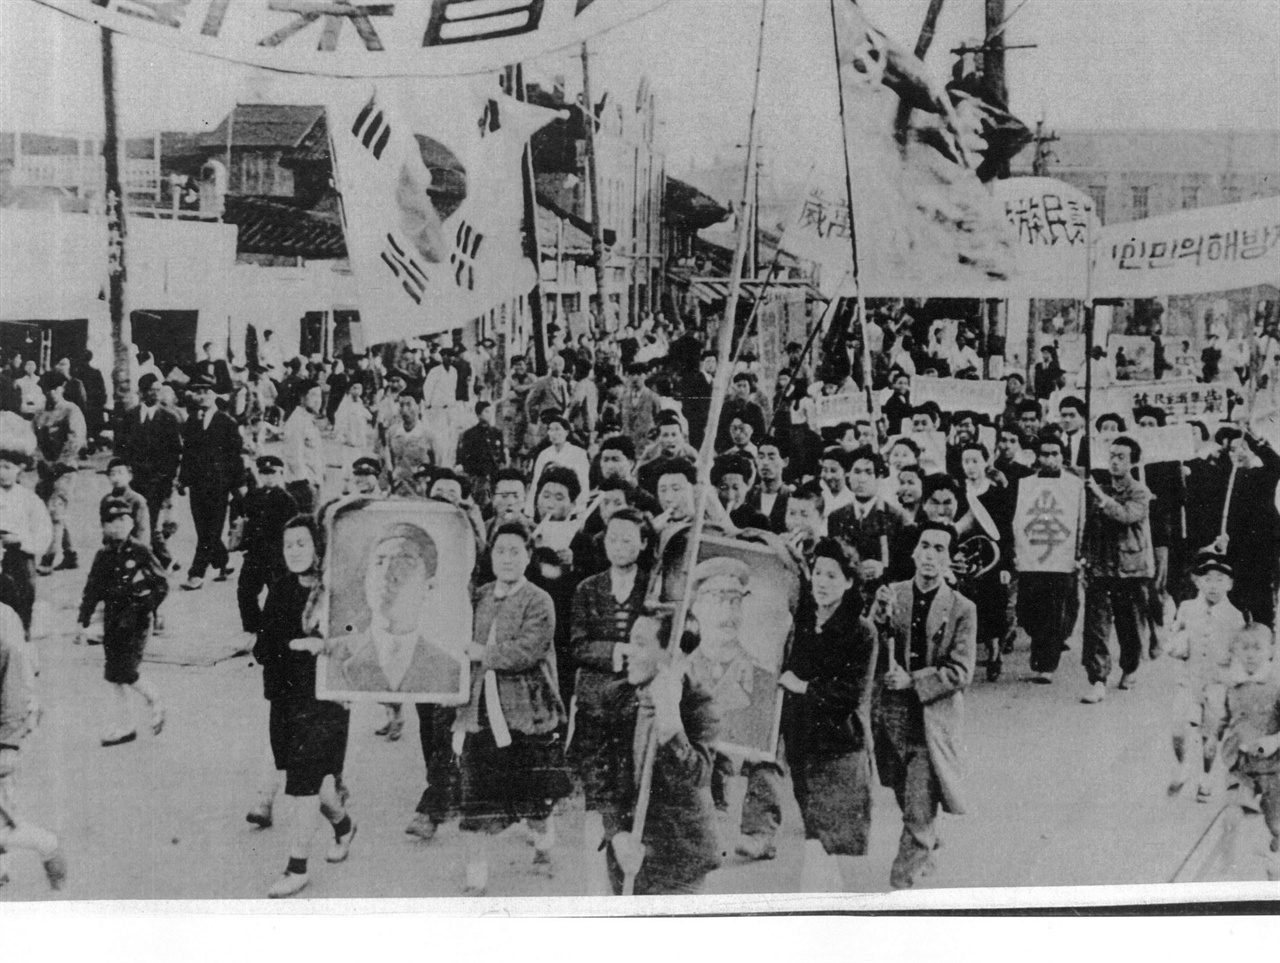  1946. 날짜 미상. 평양. 평양시민들의 김일성과 스탈린 원수에 대한 환영 지지대회 후 시가행진을 하고 있다(북한은 그때까지 태극기를 썼다).